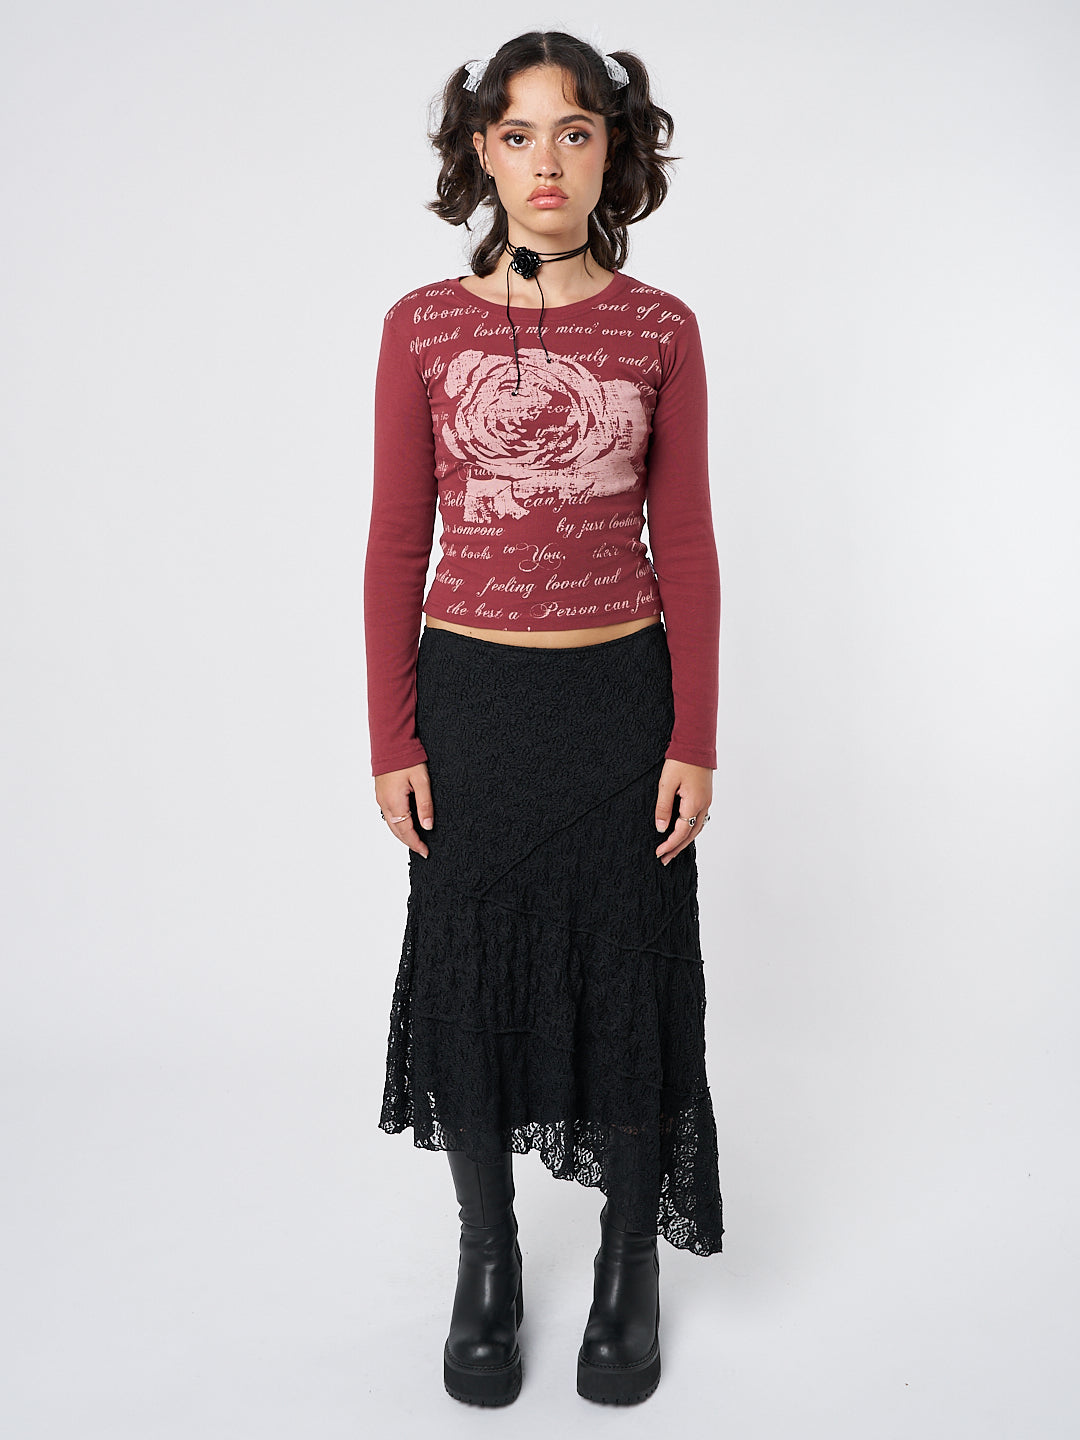 Nolia Black Lace Asymmetric Midi Skirt - Minga  US